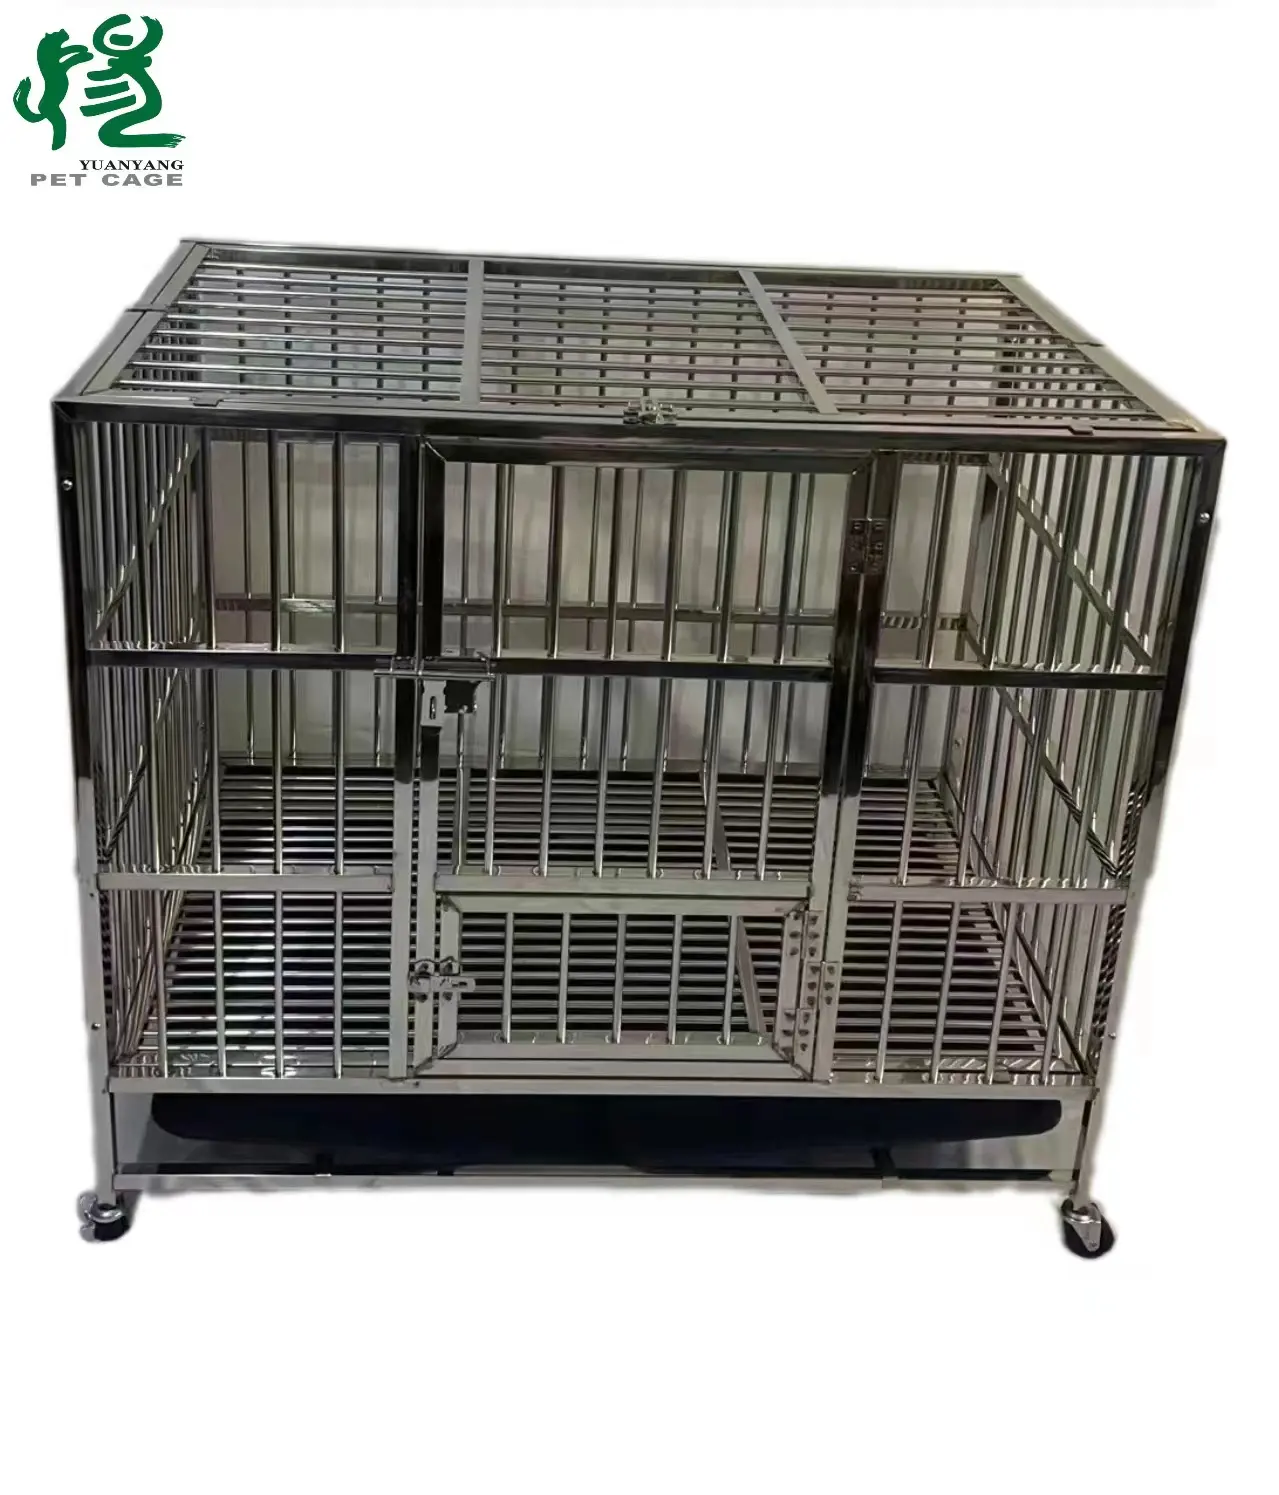 איכות גבוהה כלב נירוסטה כלוב גדול כלב בית מחמד כלוב שלוש דלתות פתוחות וסגור רב תכליתי חיזוק